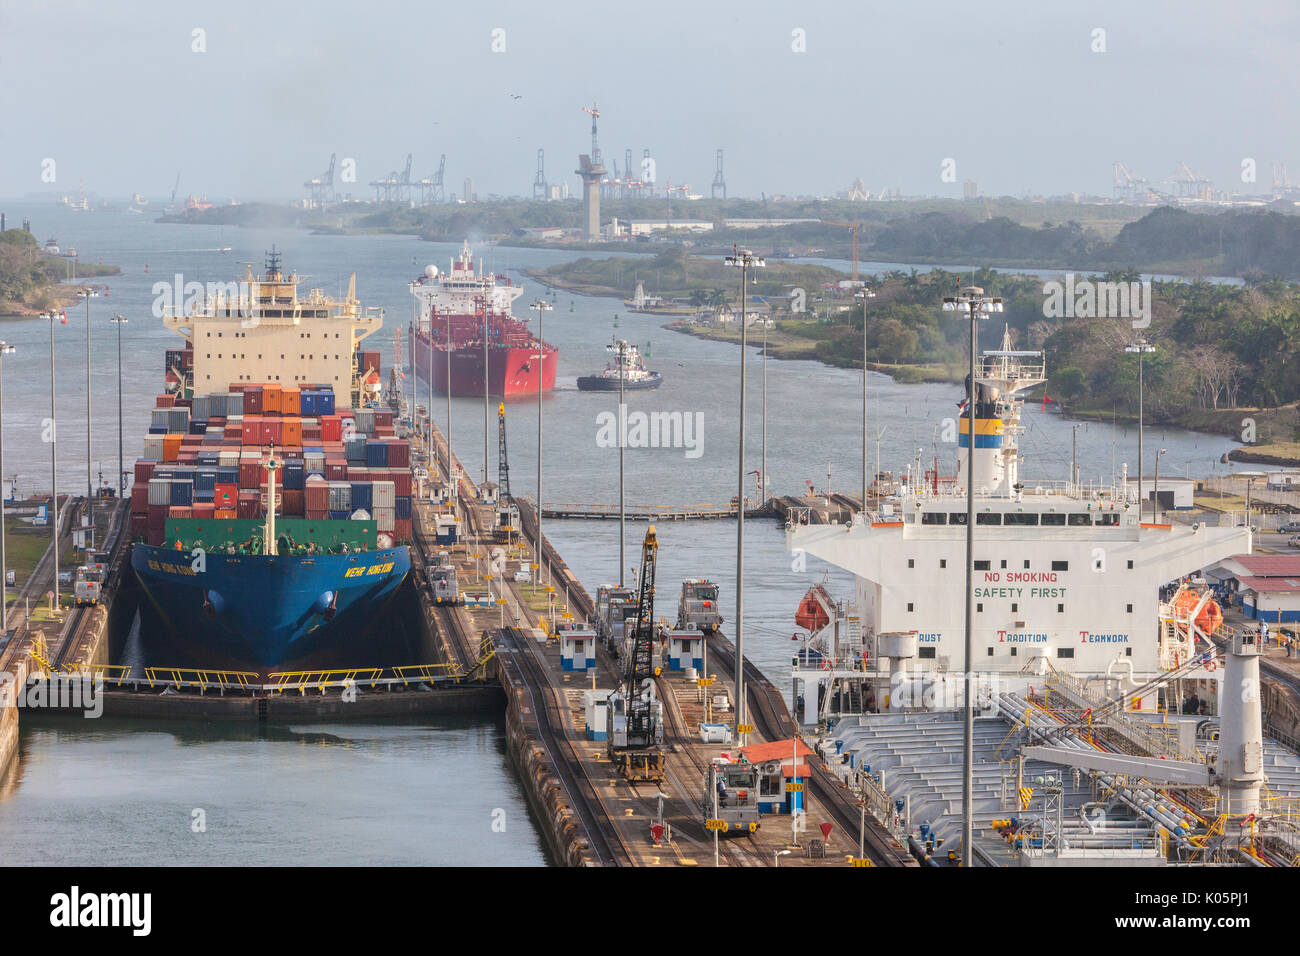 Canal de Panama, Panama. Deux navires entrant dans Première écluse en direction du sud, des Caraïbes en ce qui concerne l'arrière. Troisième navire vous attend son tour. Colon grues portuaires en remontant jusqu'à Banque D'Images